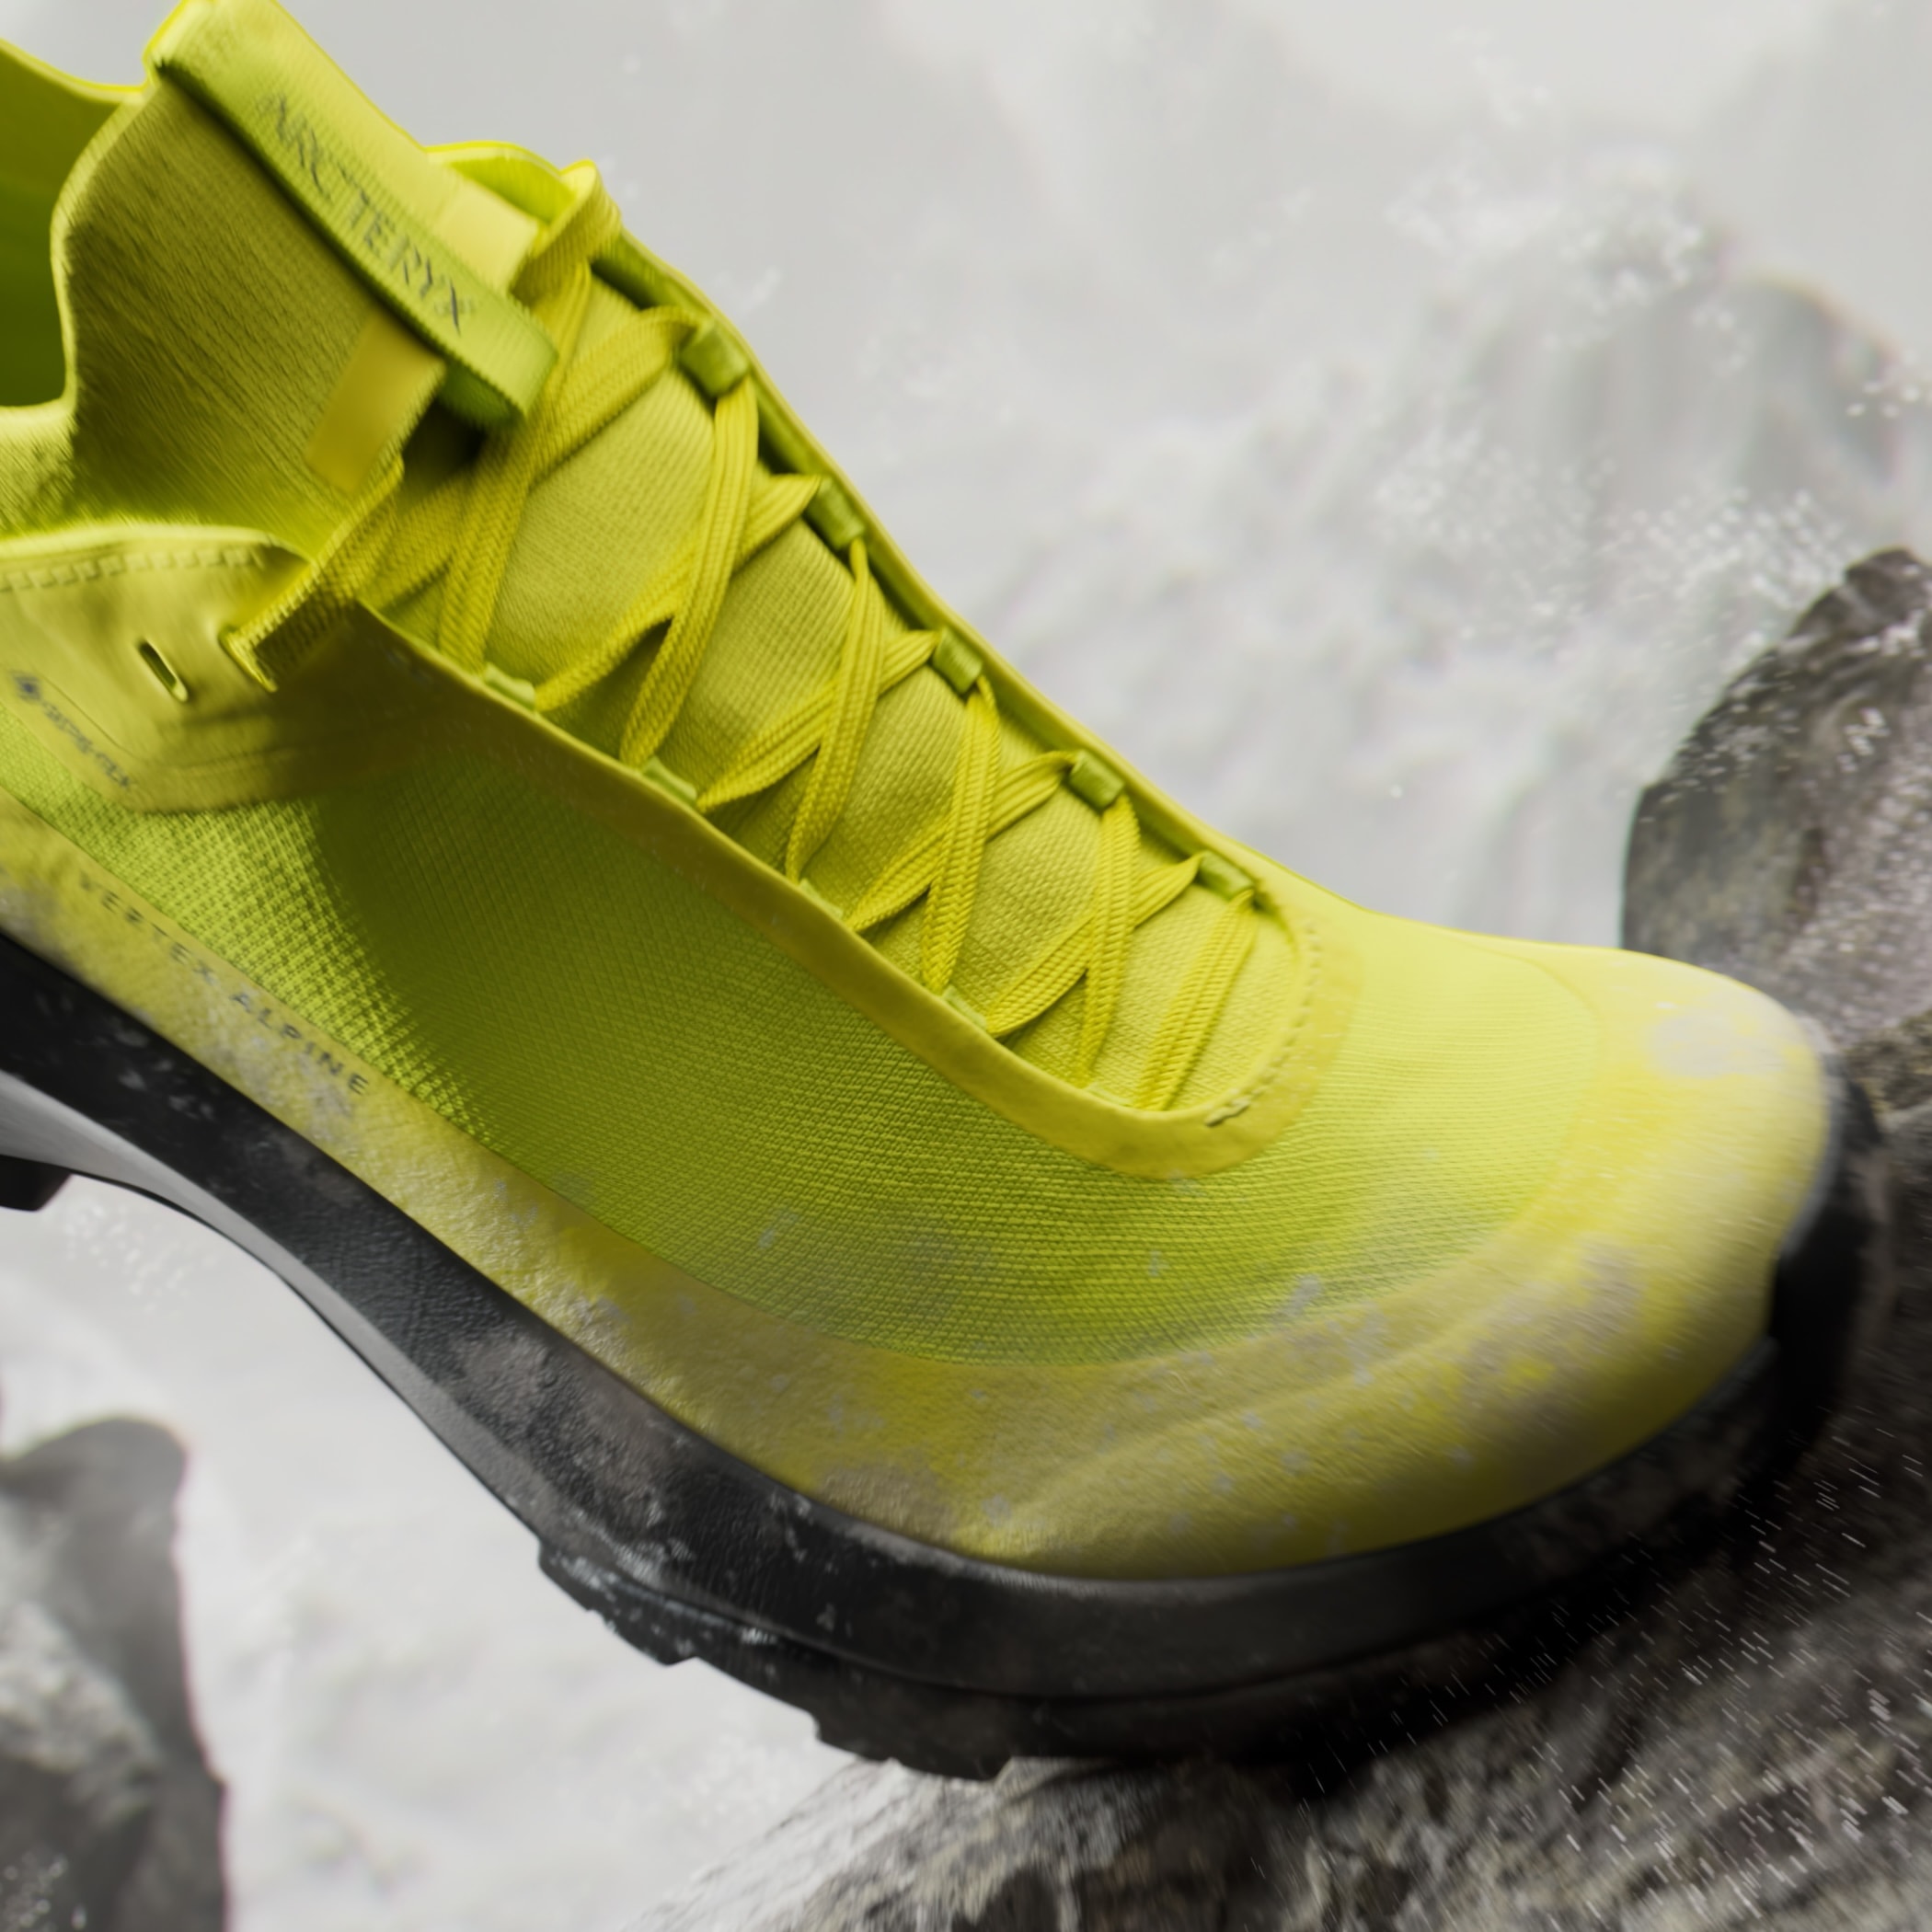 ARC'TERYX 推出首个自主设计鞋履系列